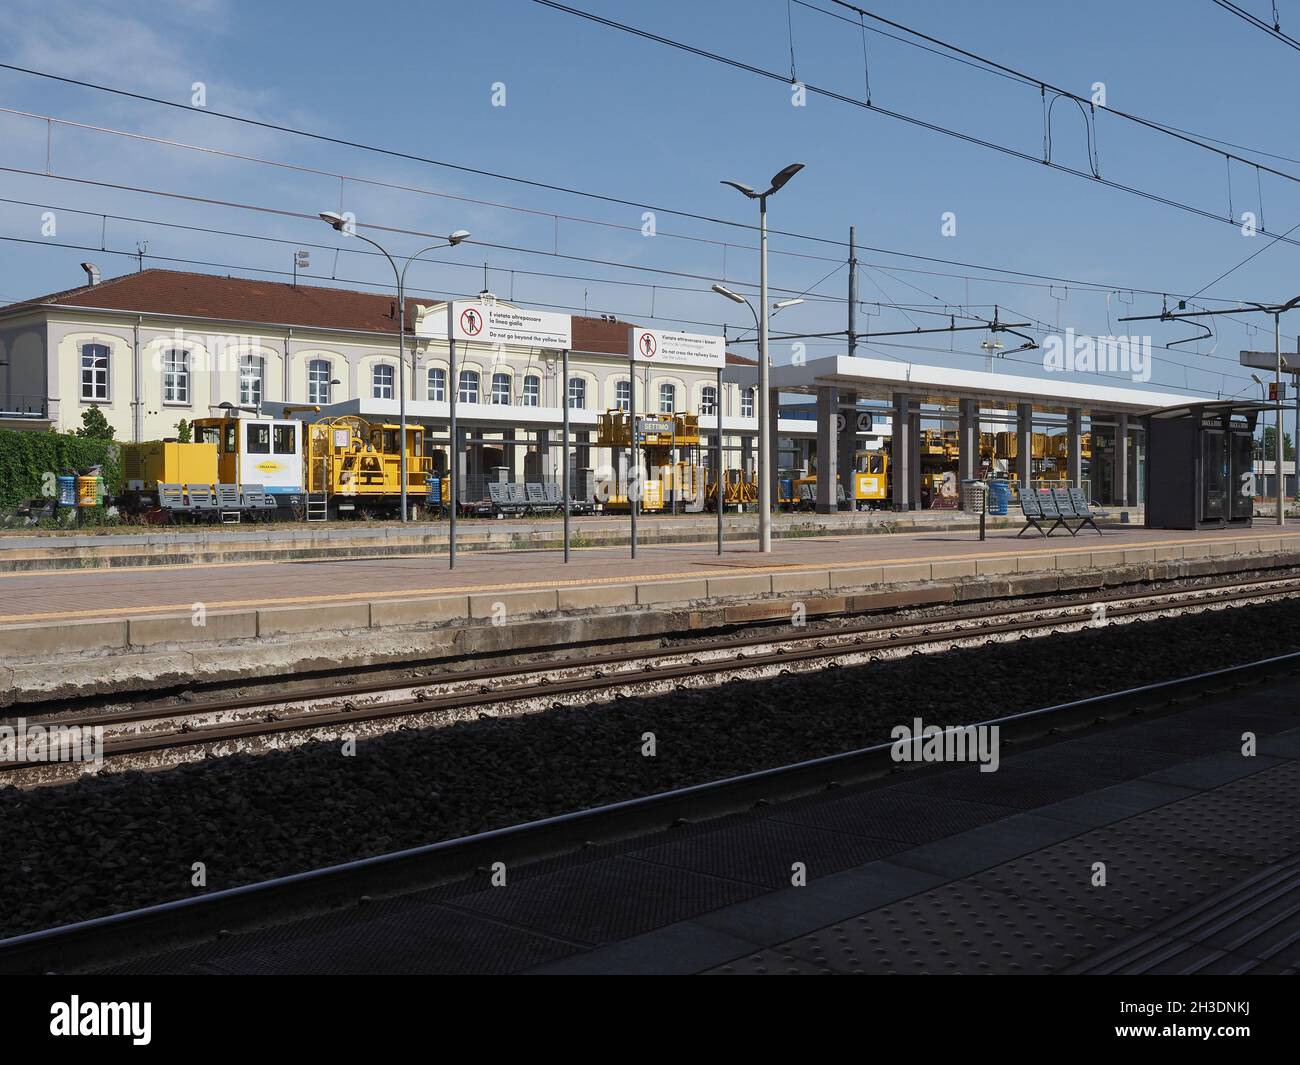 SETTIMO TORINESE, ITALIA - CIRCA AGOSTO 2021: Stazione ferroviaria di Settimo Torinese Foto Stock